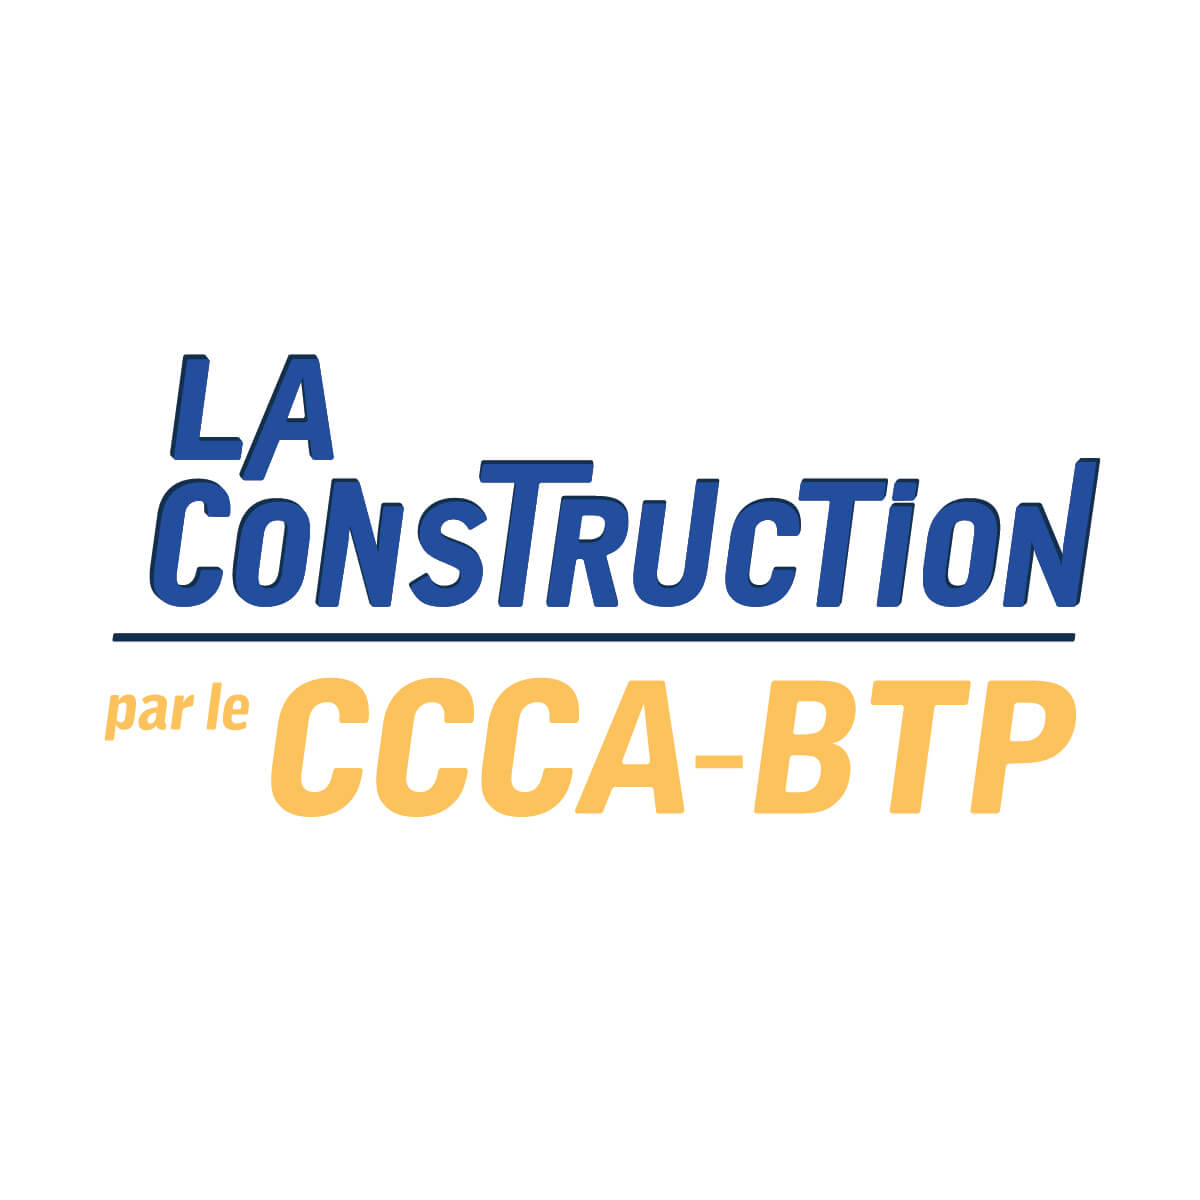 La construction, par le CCCA-BTP